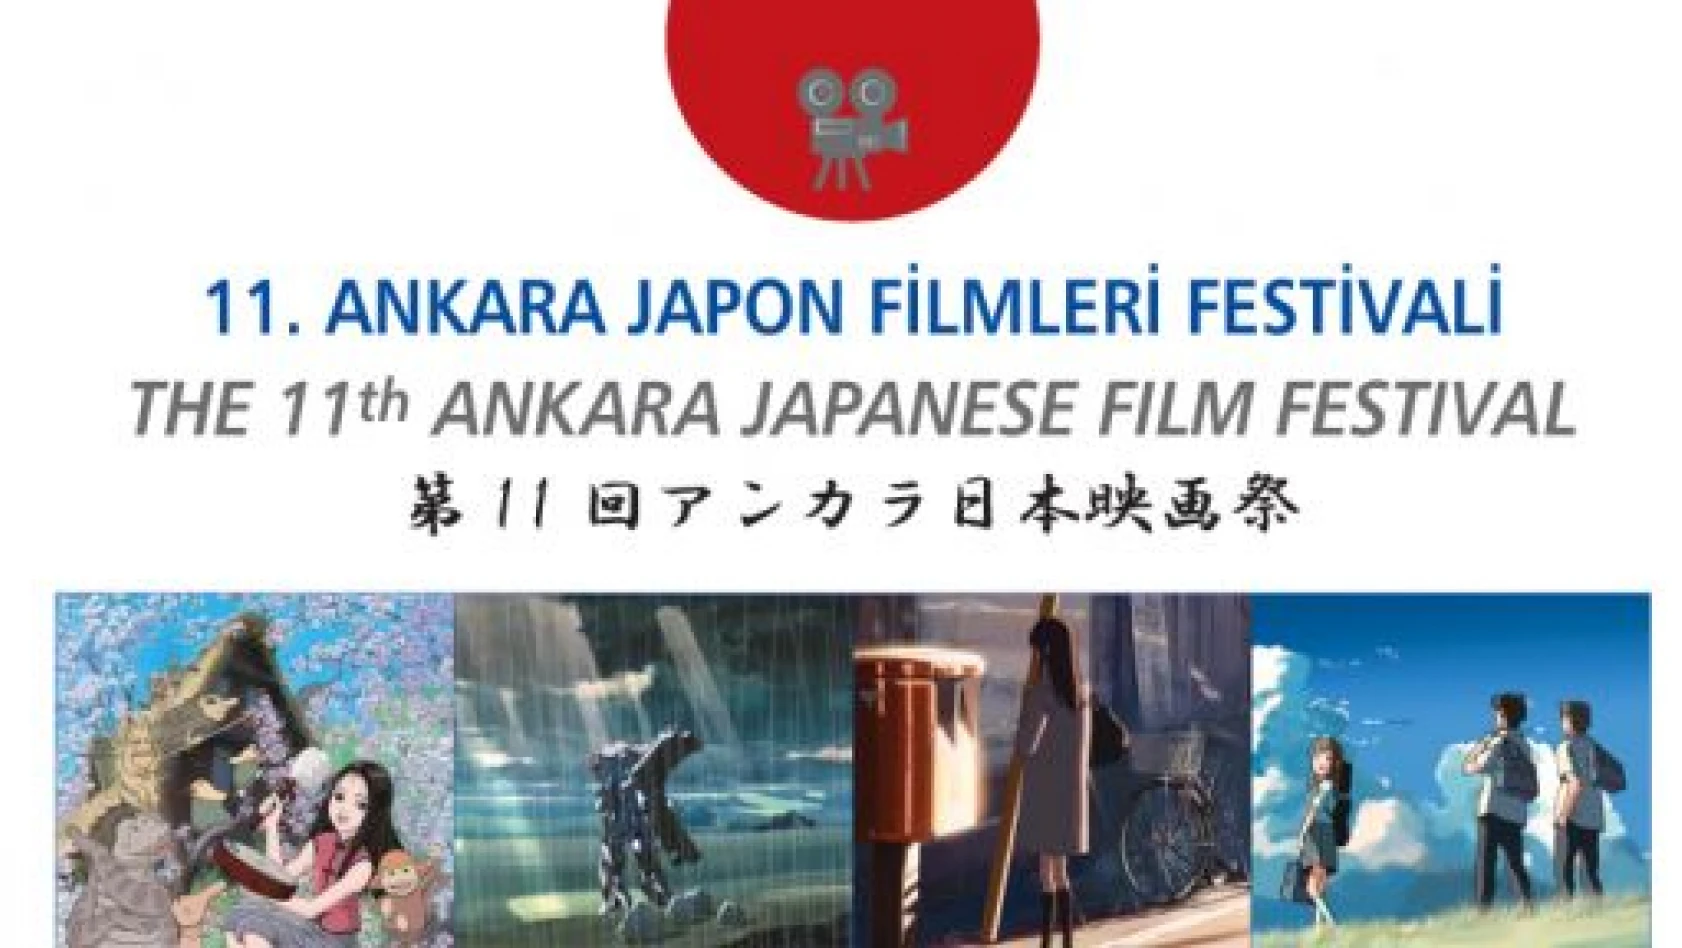 Japon filmleri, ücretsiz Ankara'da